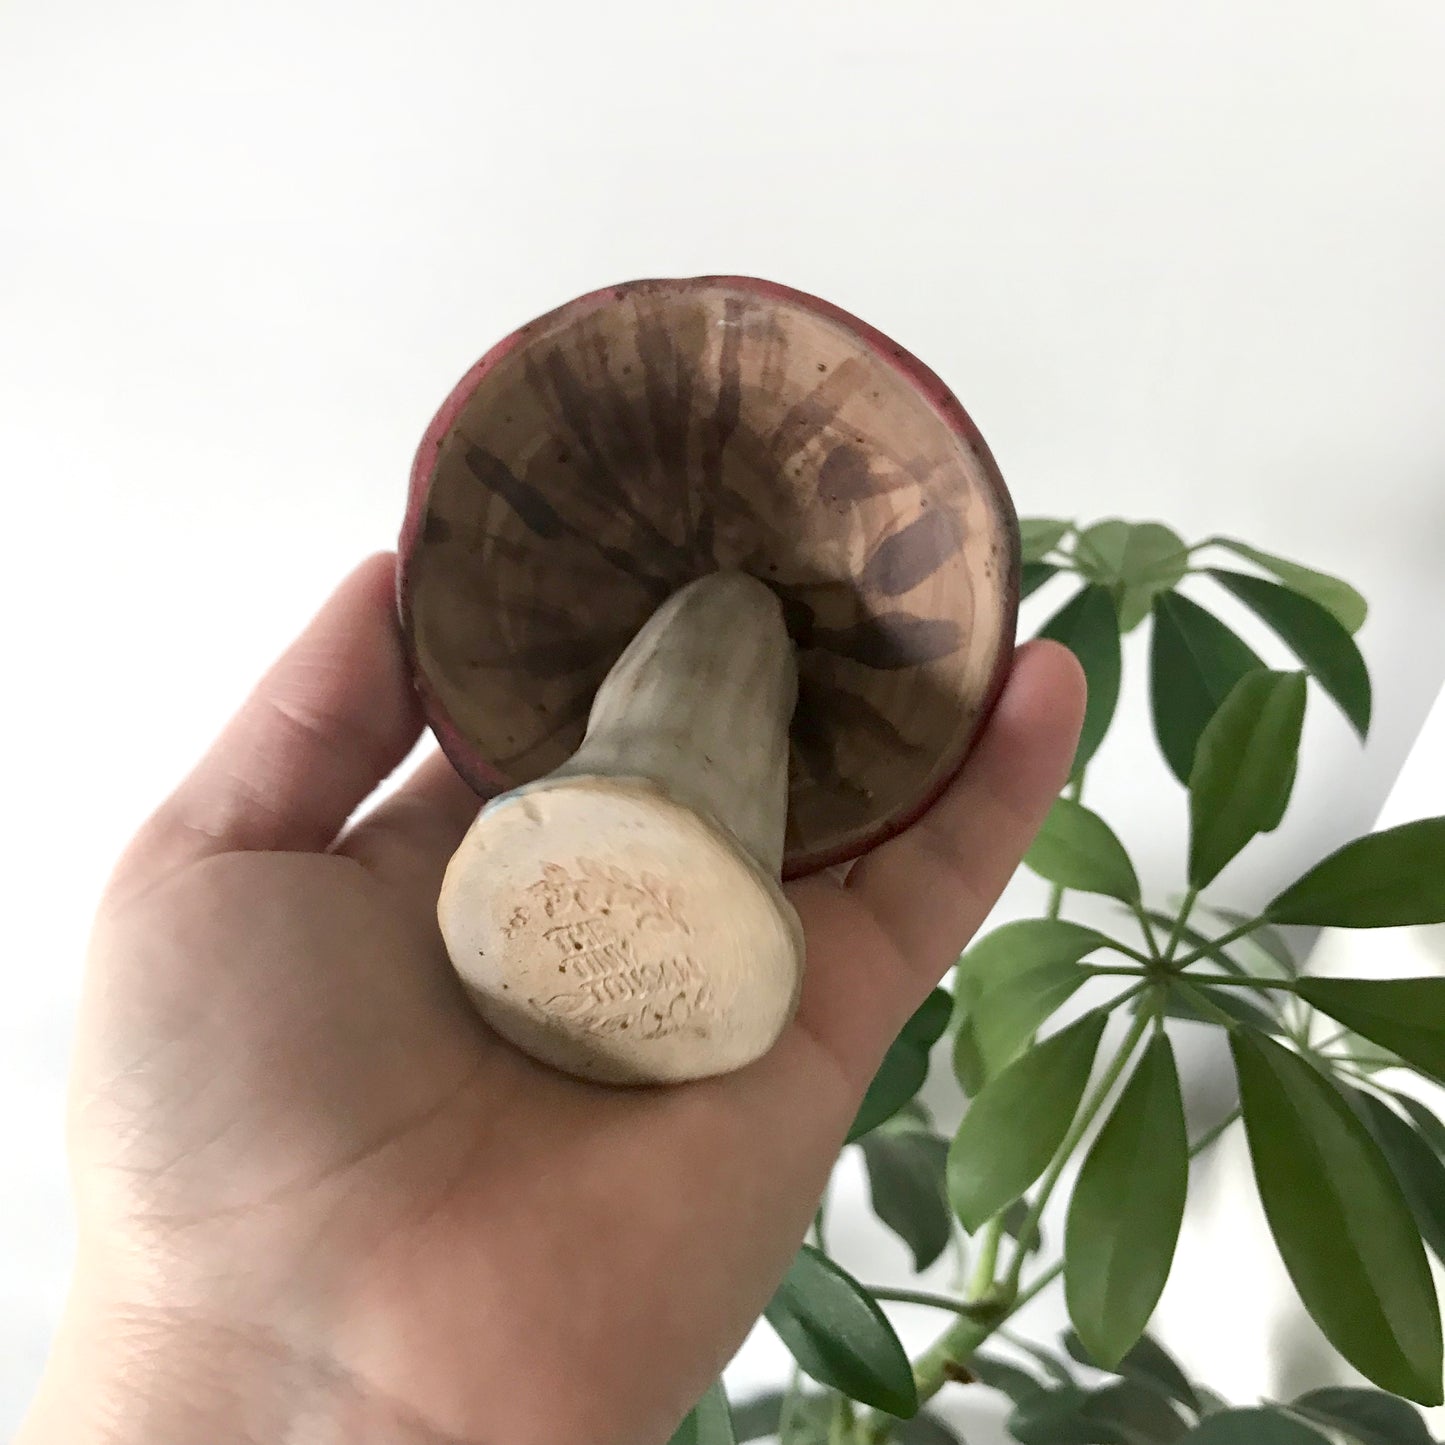 Mushroom bell